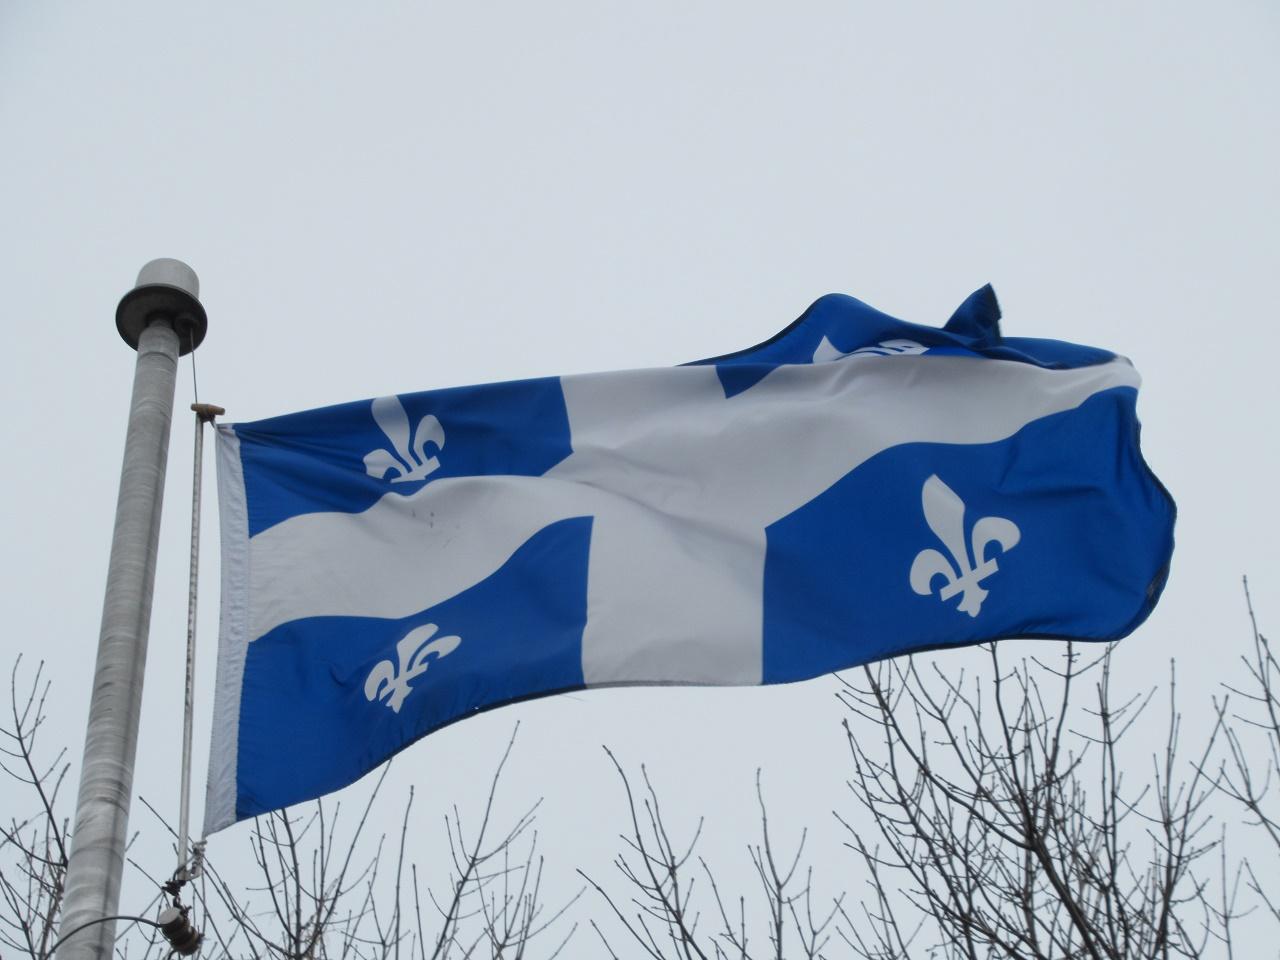 Québec education minister announces pandemic plan for CÉGEP, university classes